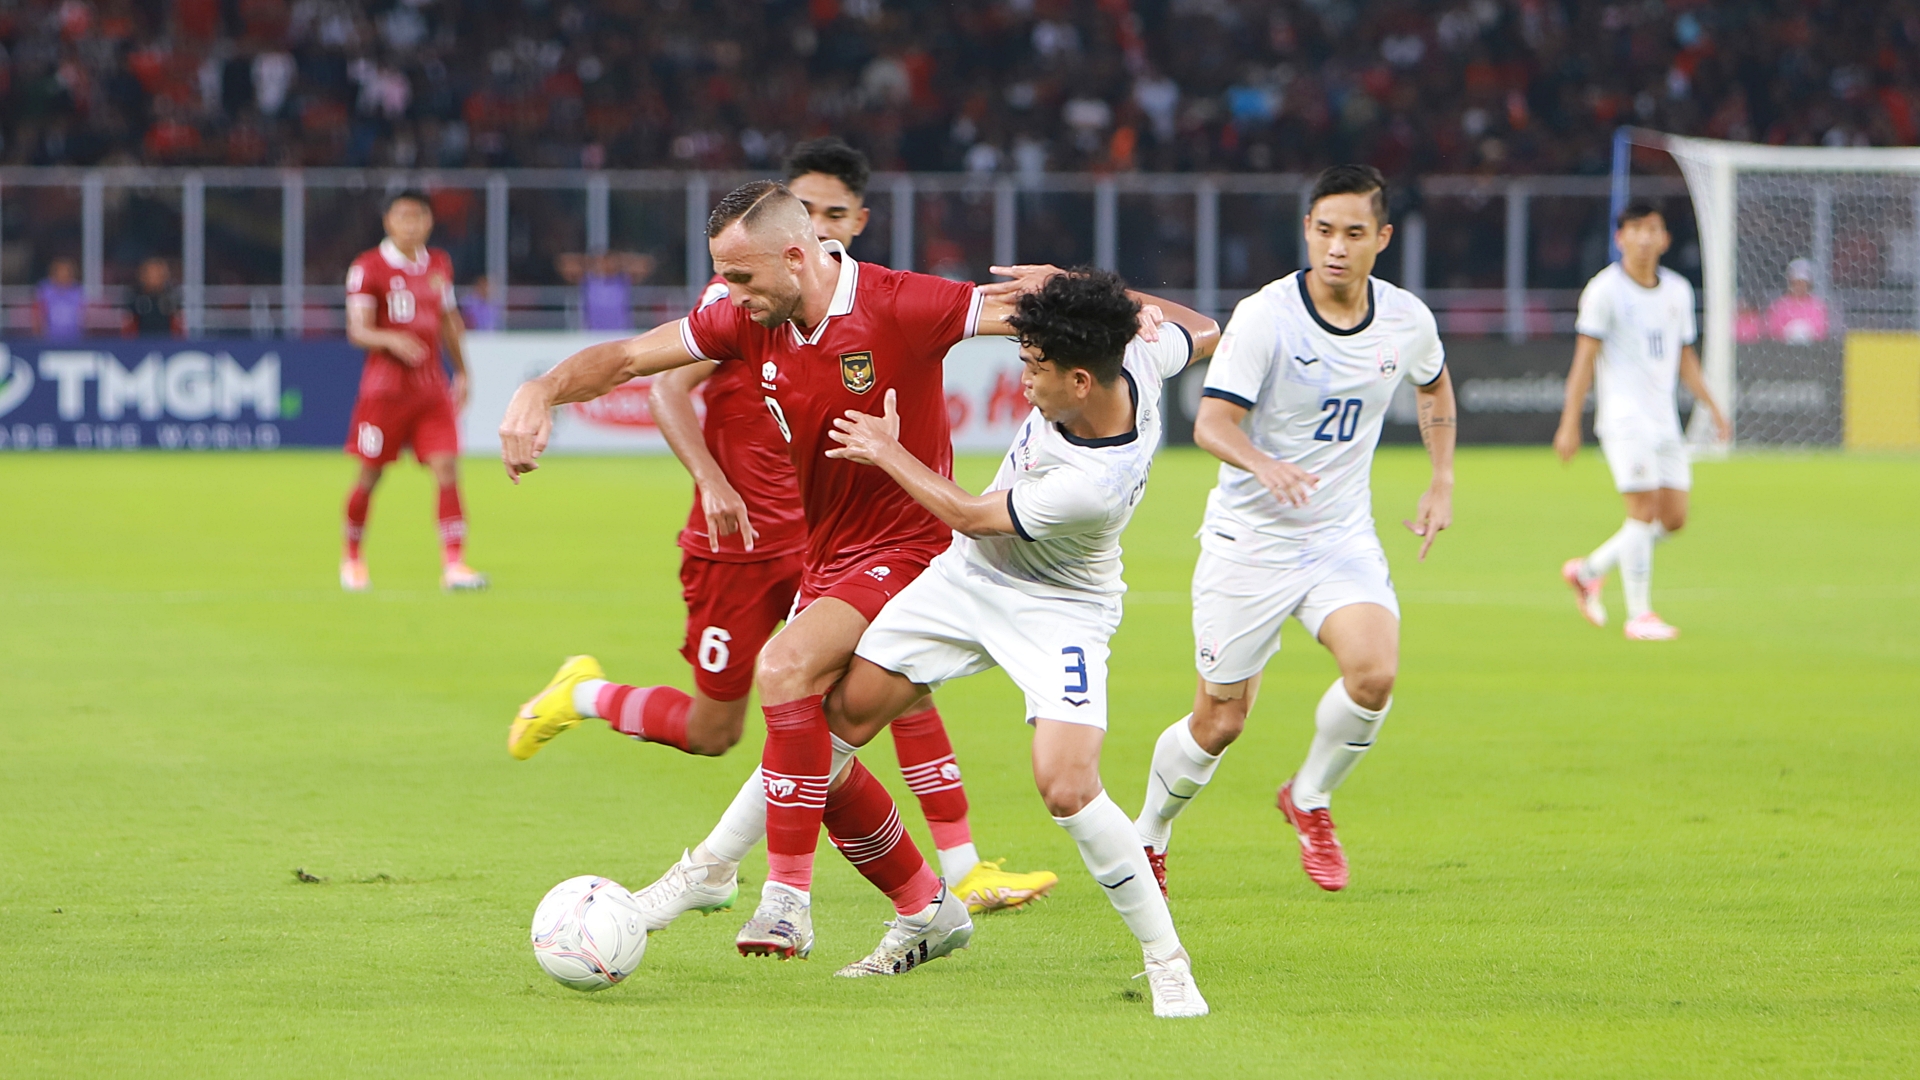 Piala AFF 2022: Indonesia Belum Lolos, Ilija Spasojevic Tertantang Main di Rumput Sintetis